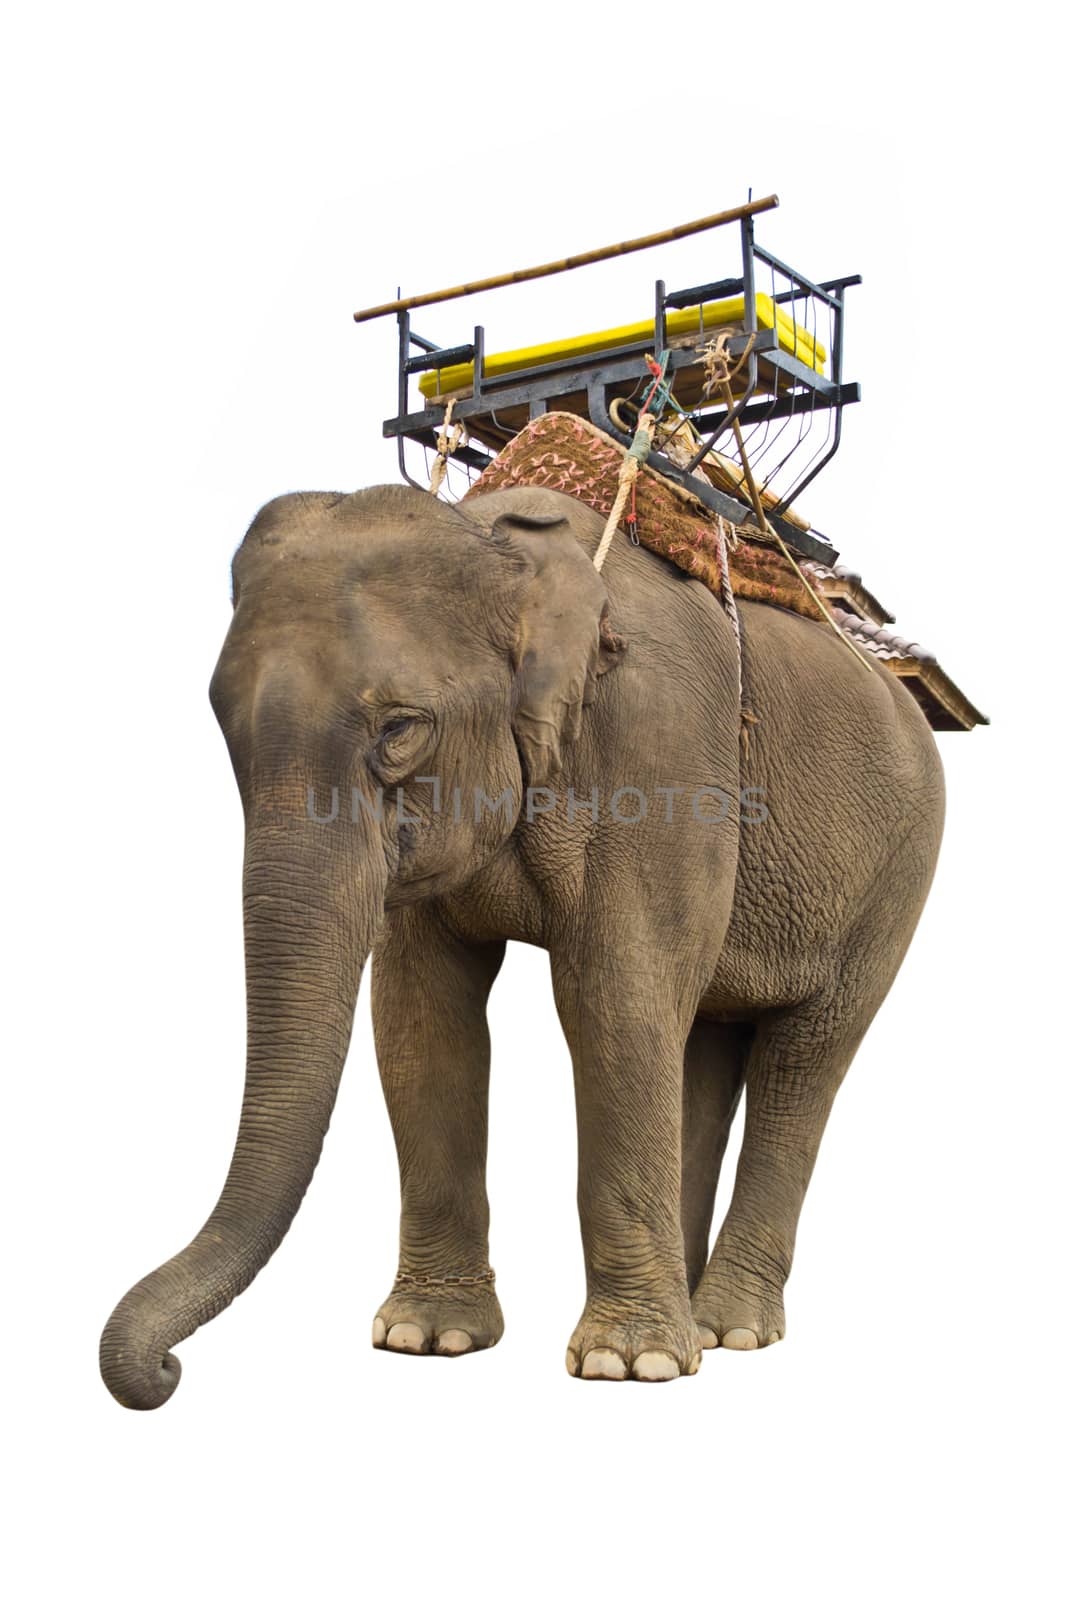 elephant isolated on white background by Thanamat